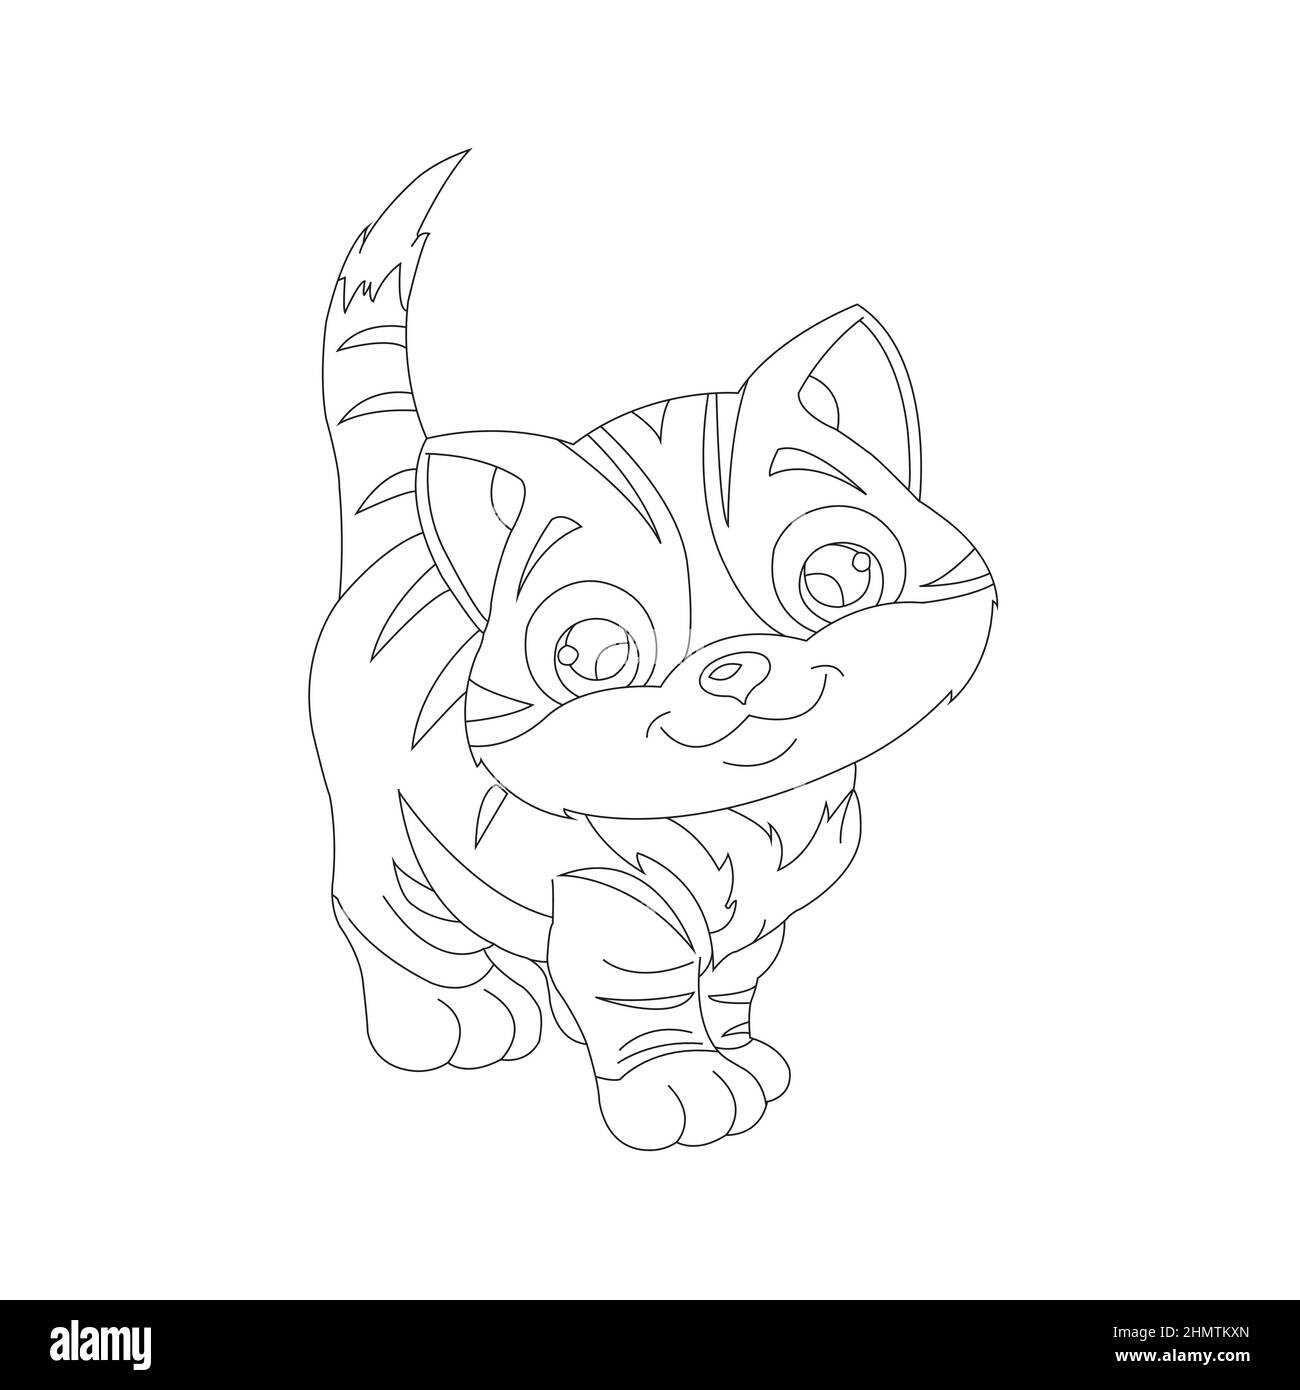 Malvorlagen Umriss von niedlichen Katze Tier Malvorlagen Cartoon Vektor Illustration Stock Vektor